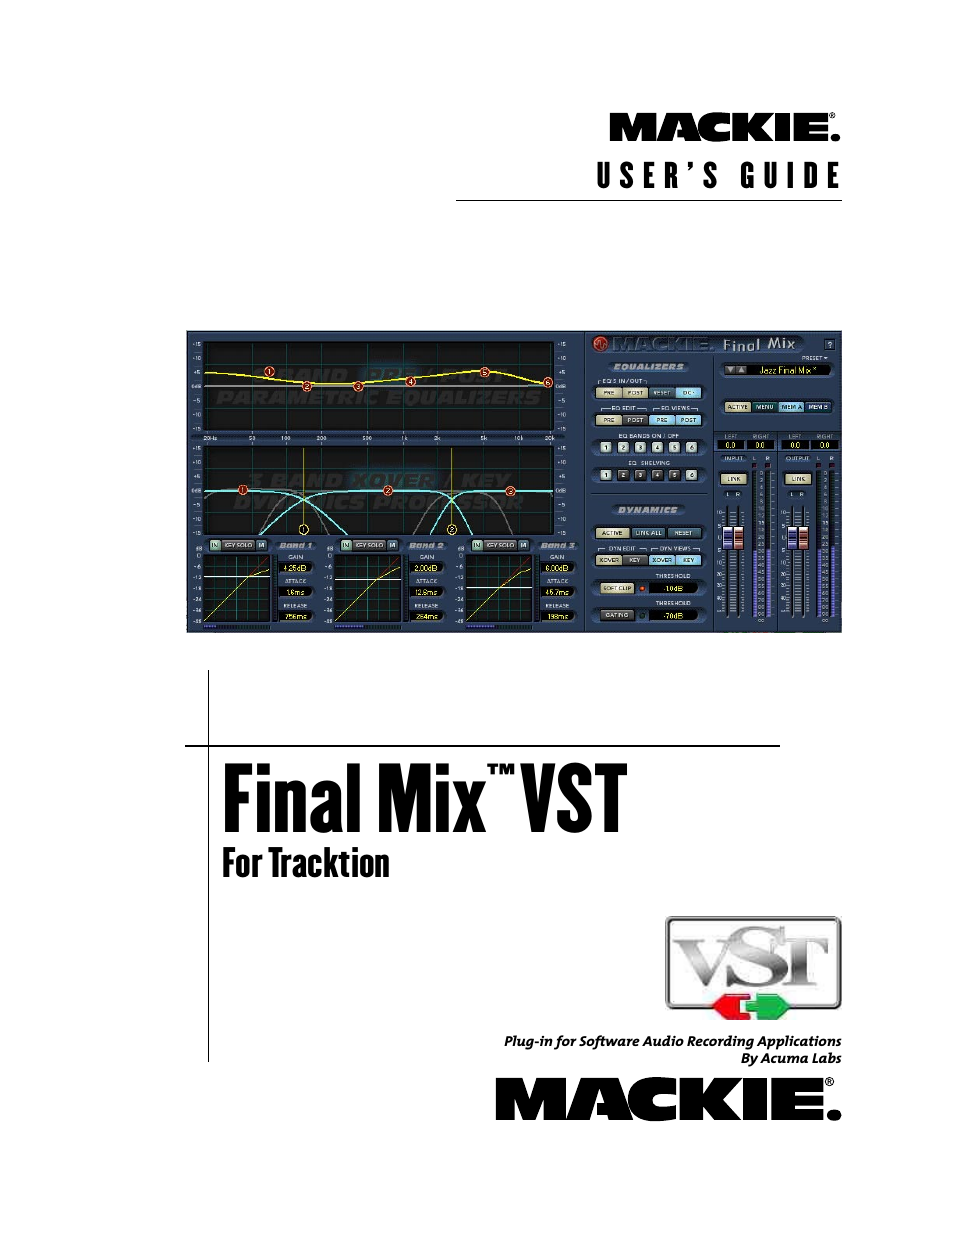 FinalMix VST